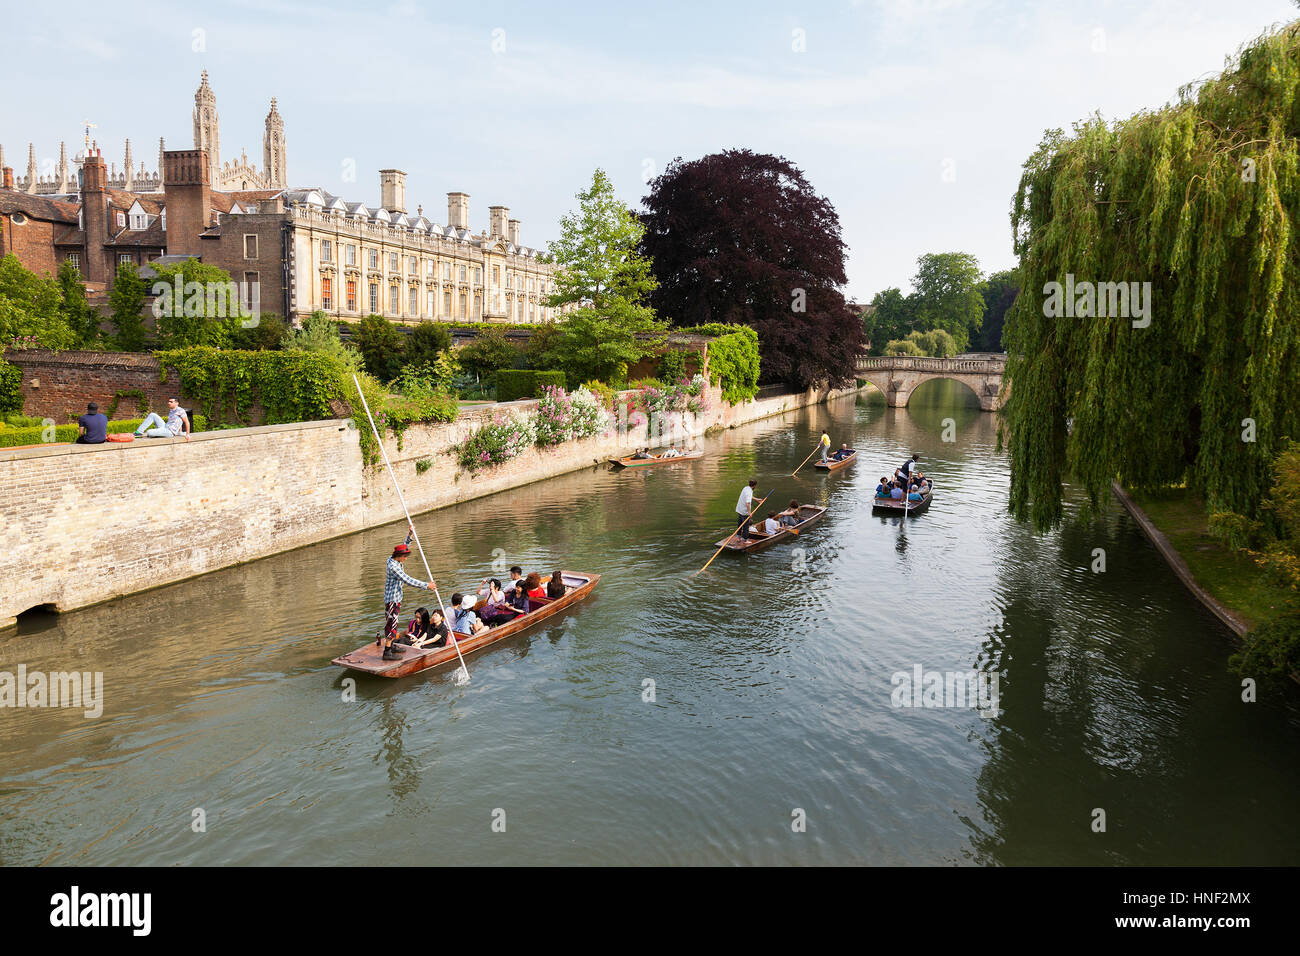 CAMBRIDGE, UK - 12. Juni 2015: Menschen in Booten auf dem Fluss Cam mit Clare College und Clare Bridge im Hintergrund Stockfoto